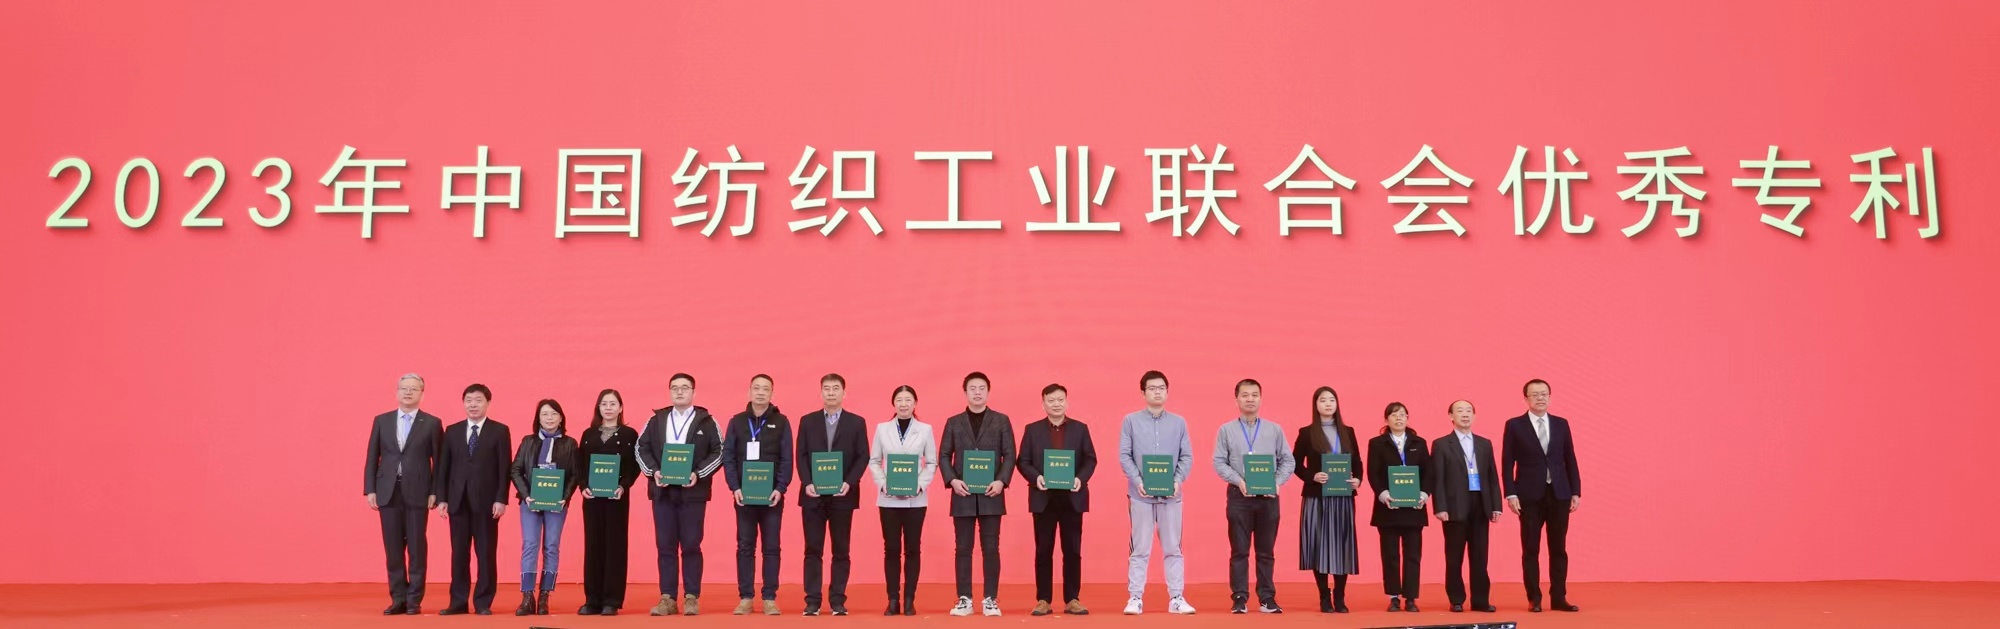 篮球下注（中国）科技有限公司荣获2023年“中国纺织工业联合会优秀专利金奖”